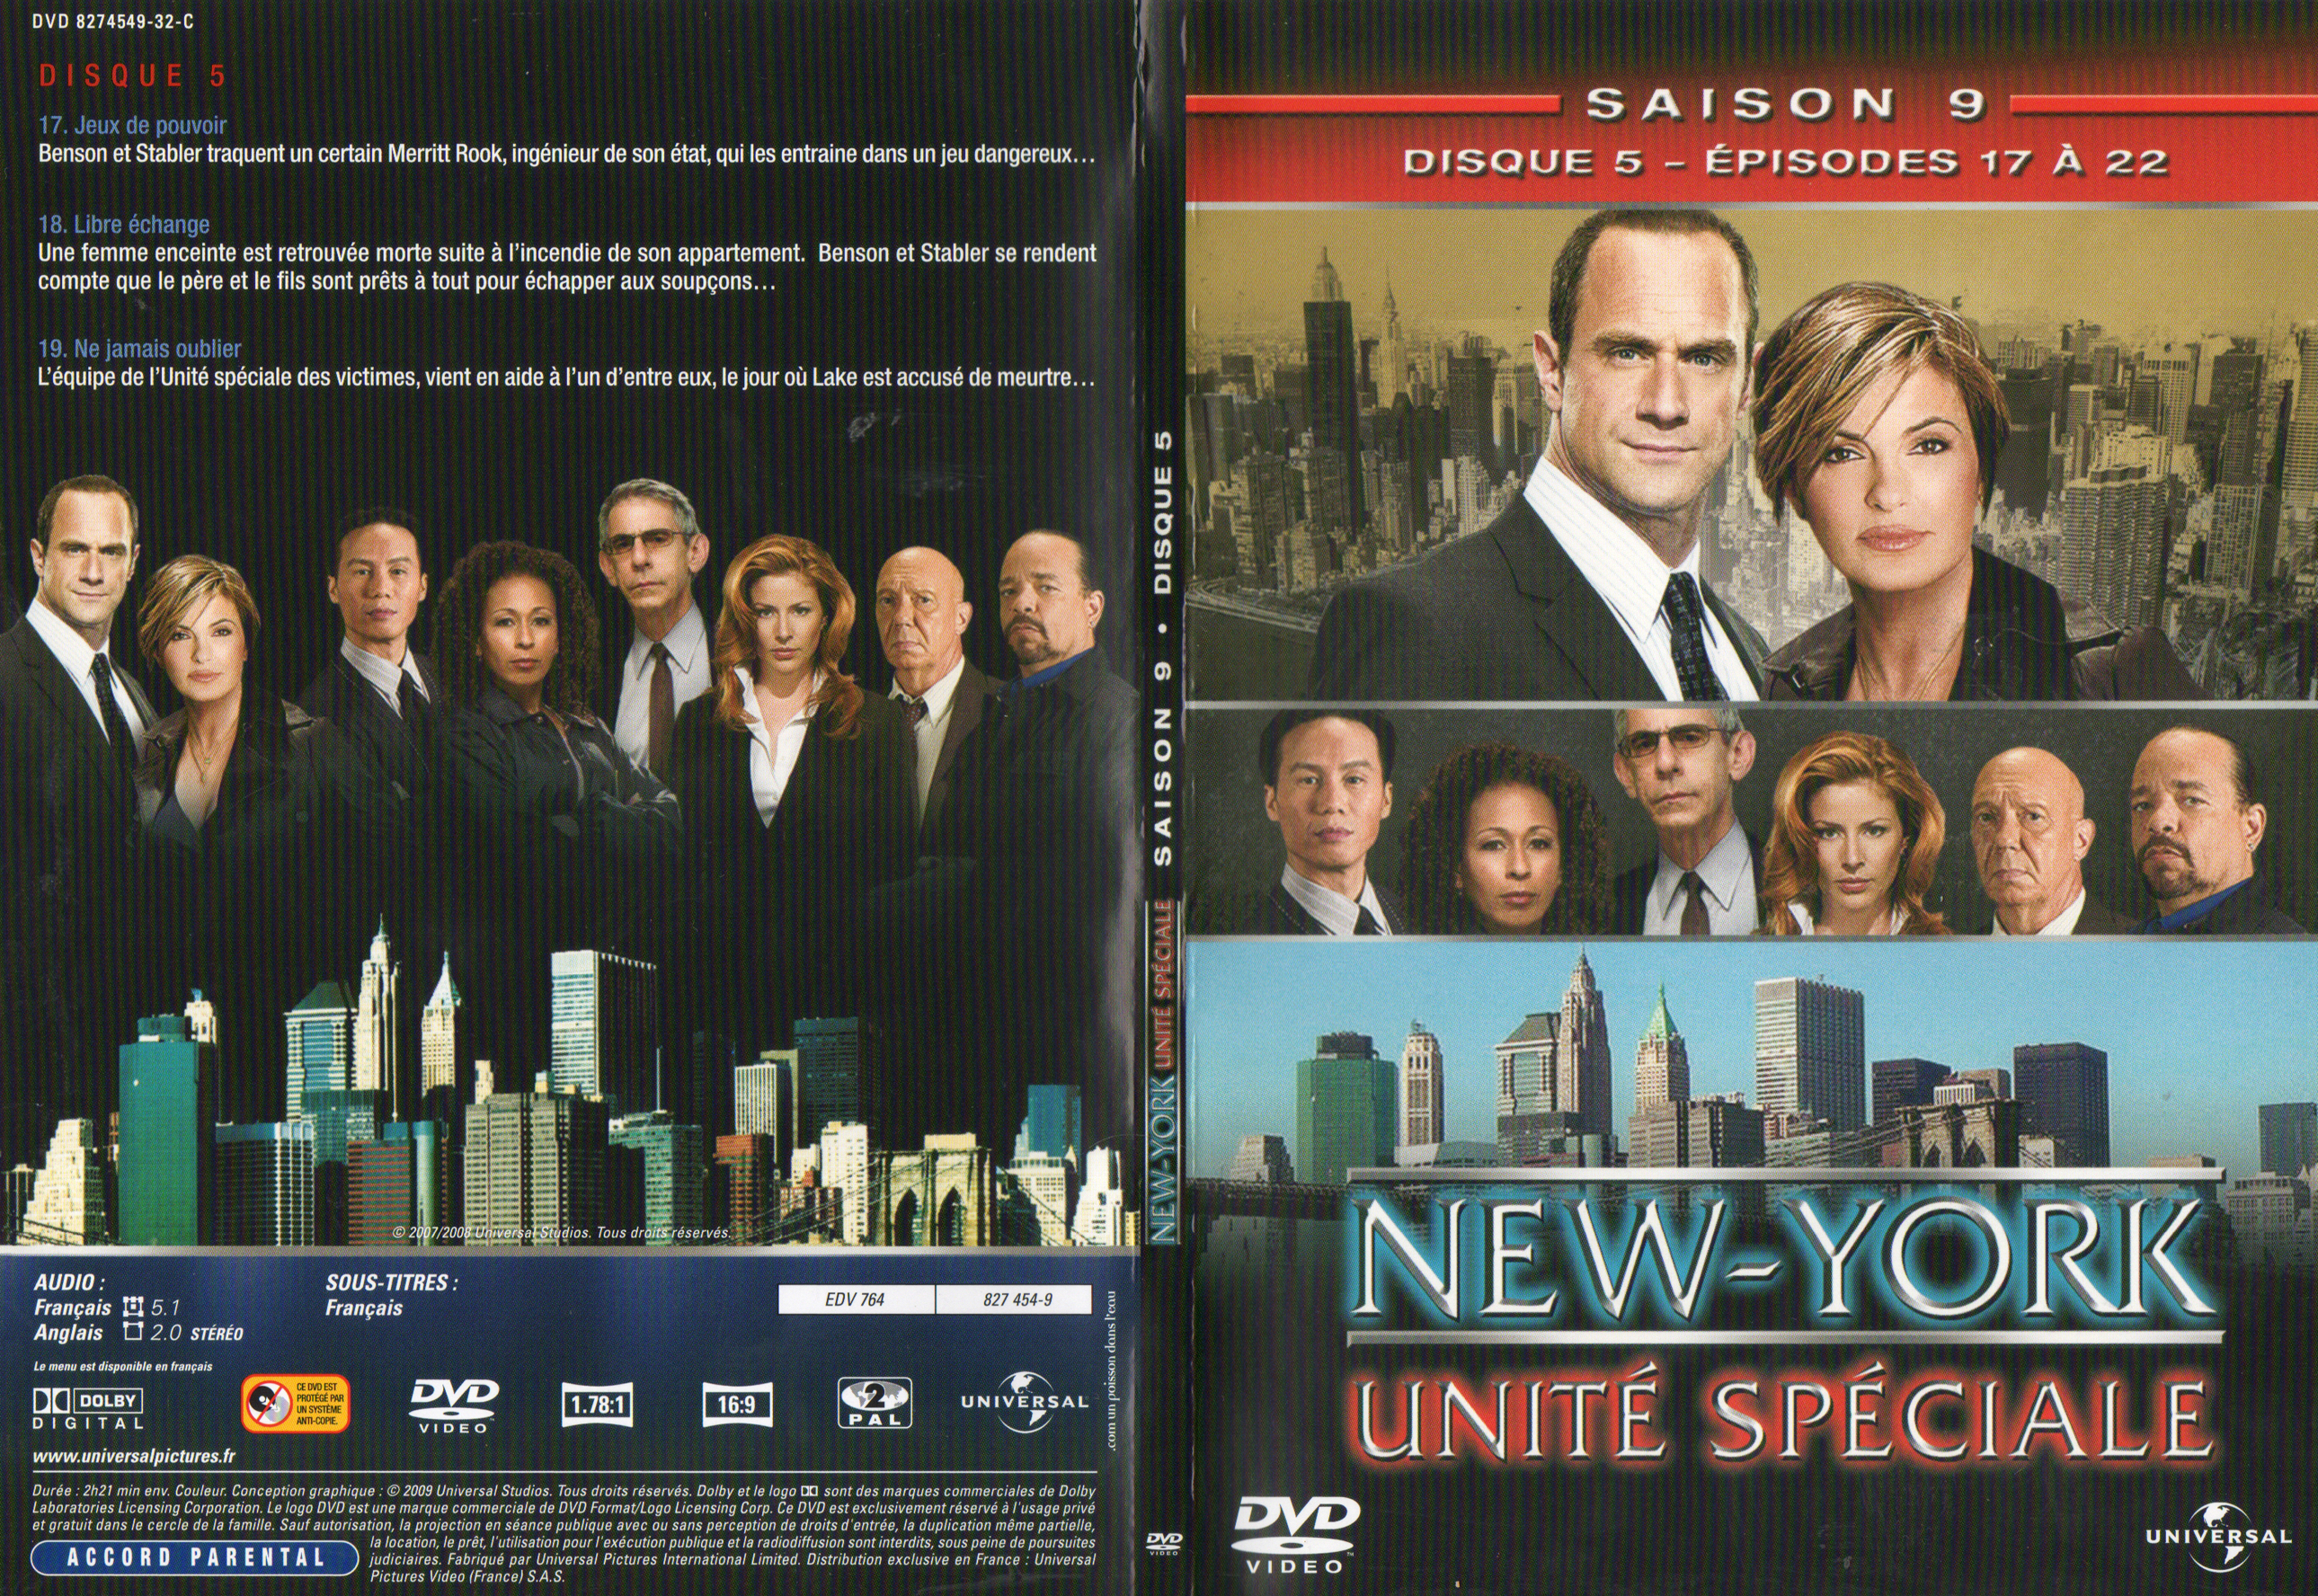 Jaquette DVD New York unit spciale saison 9 DVD 3